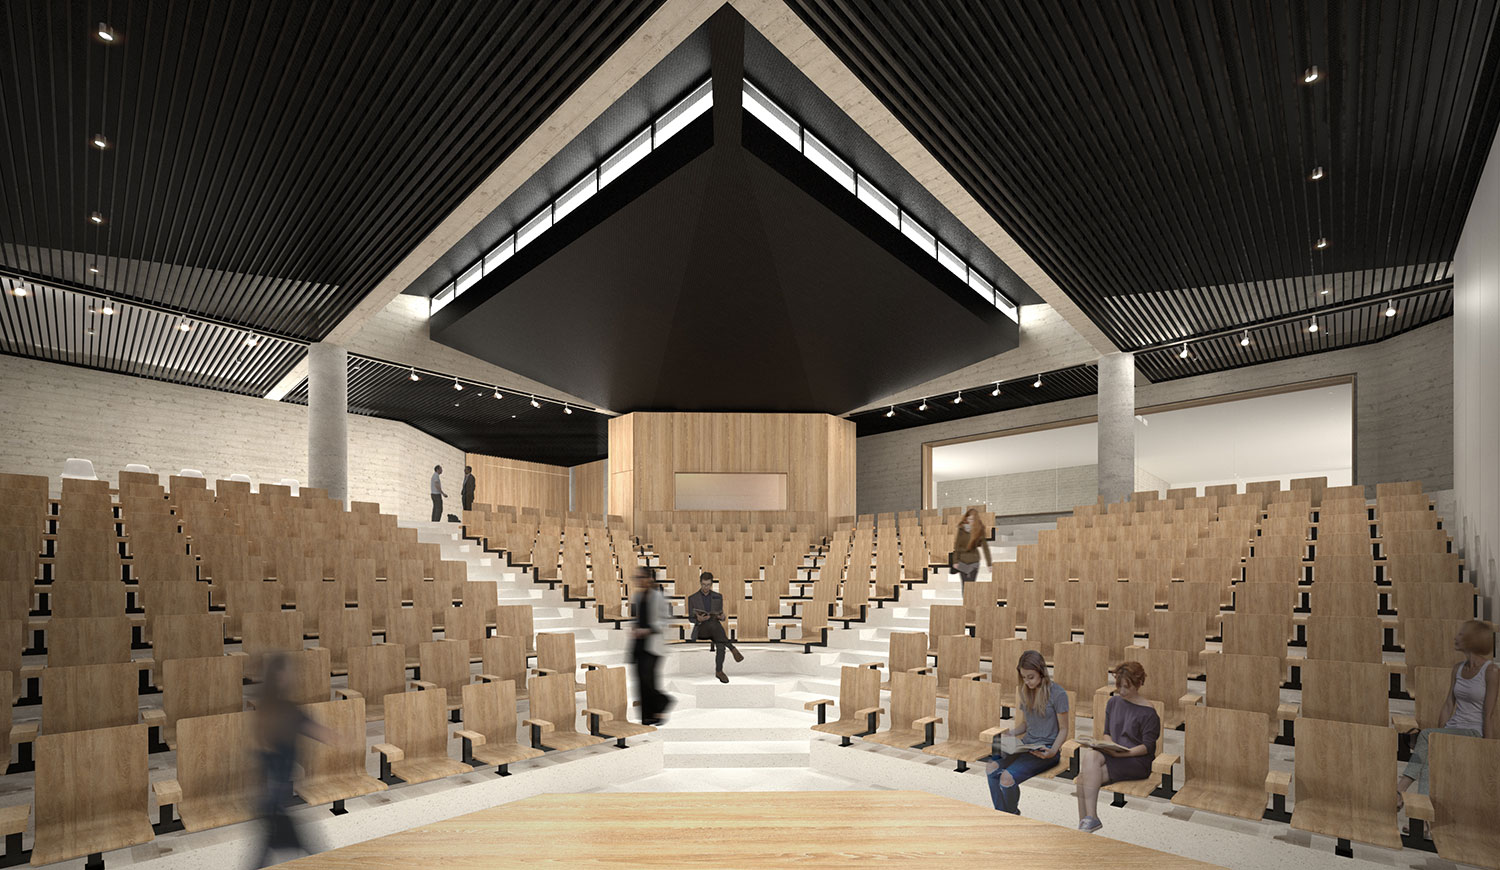 Architect's rendering of the Auditorium